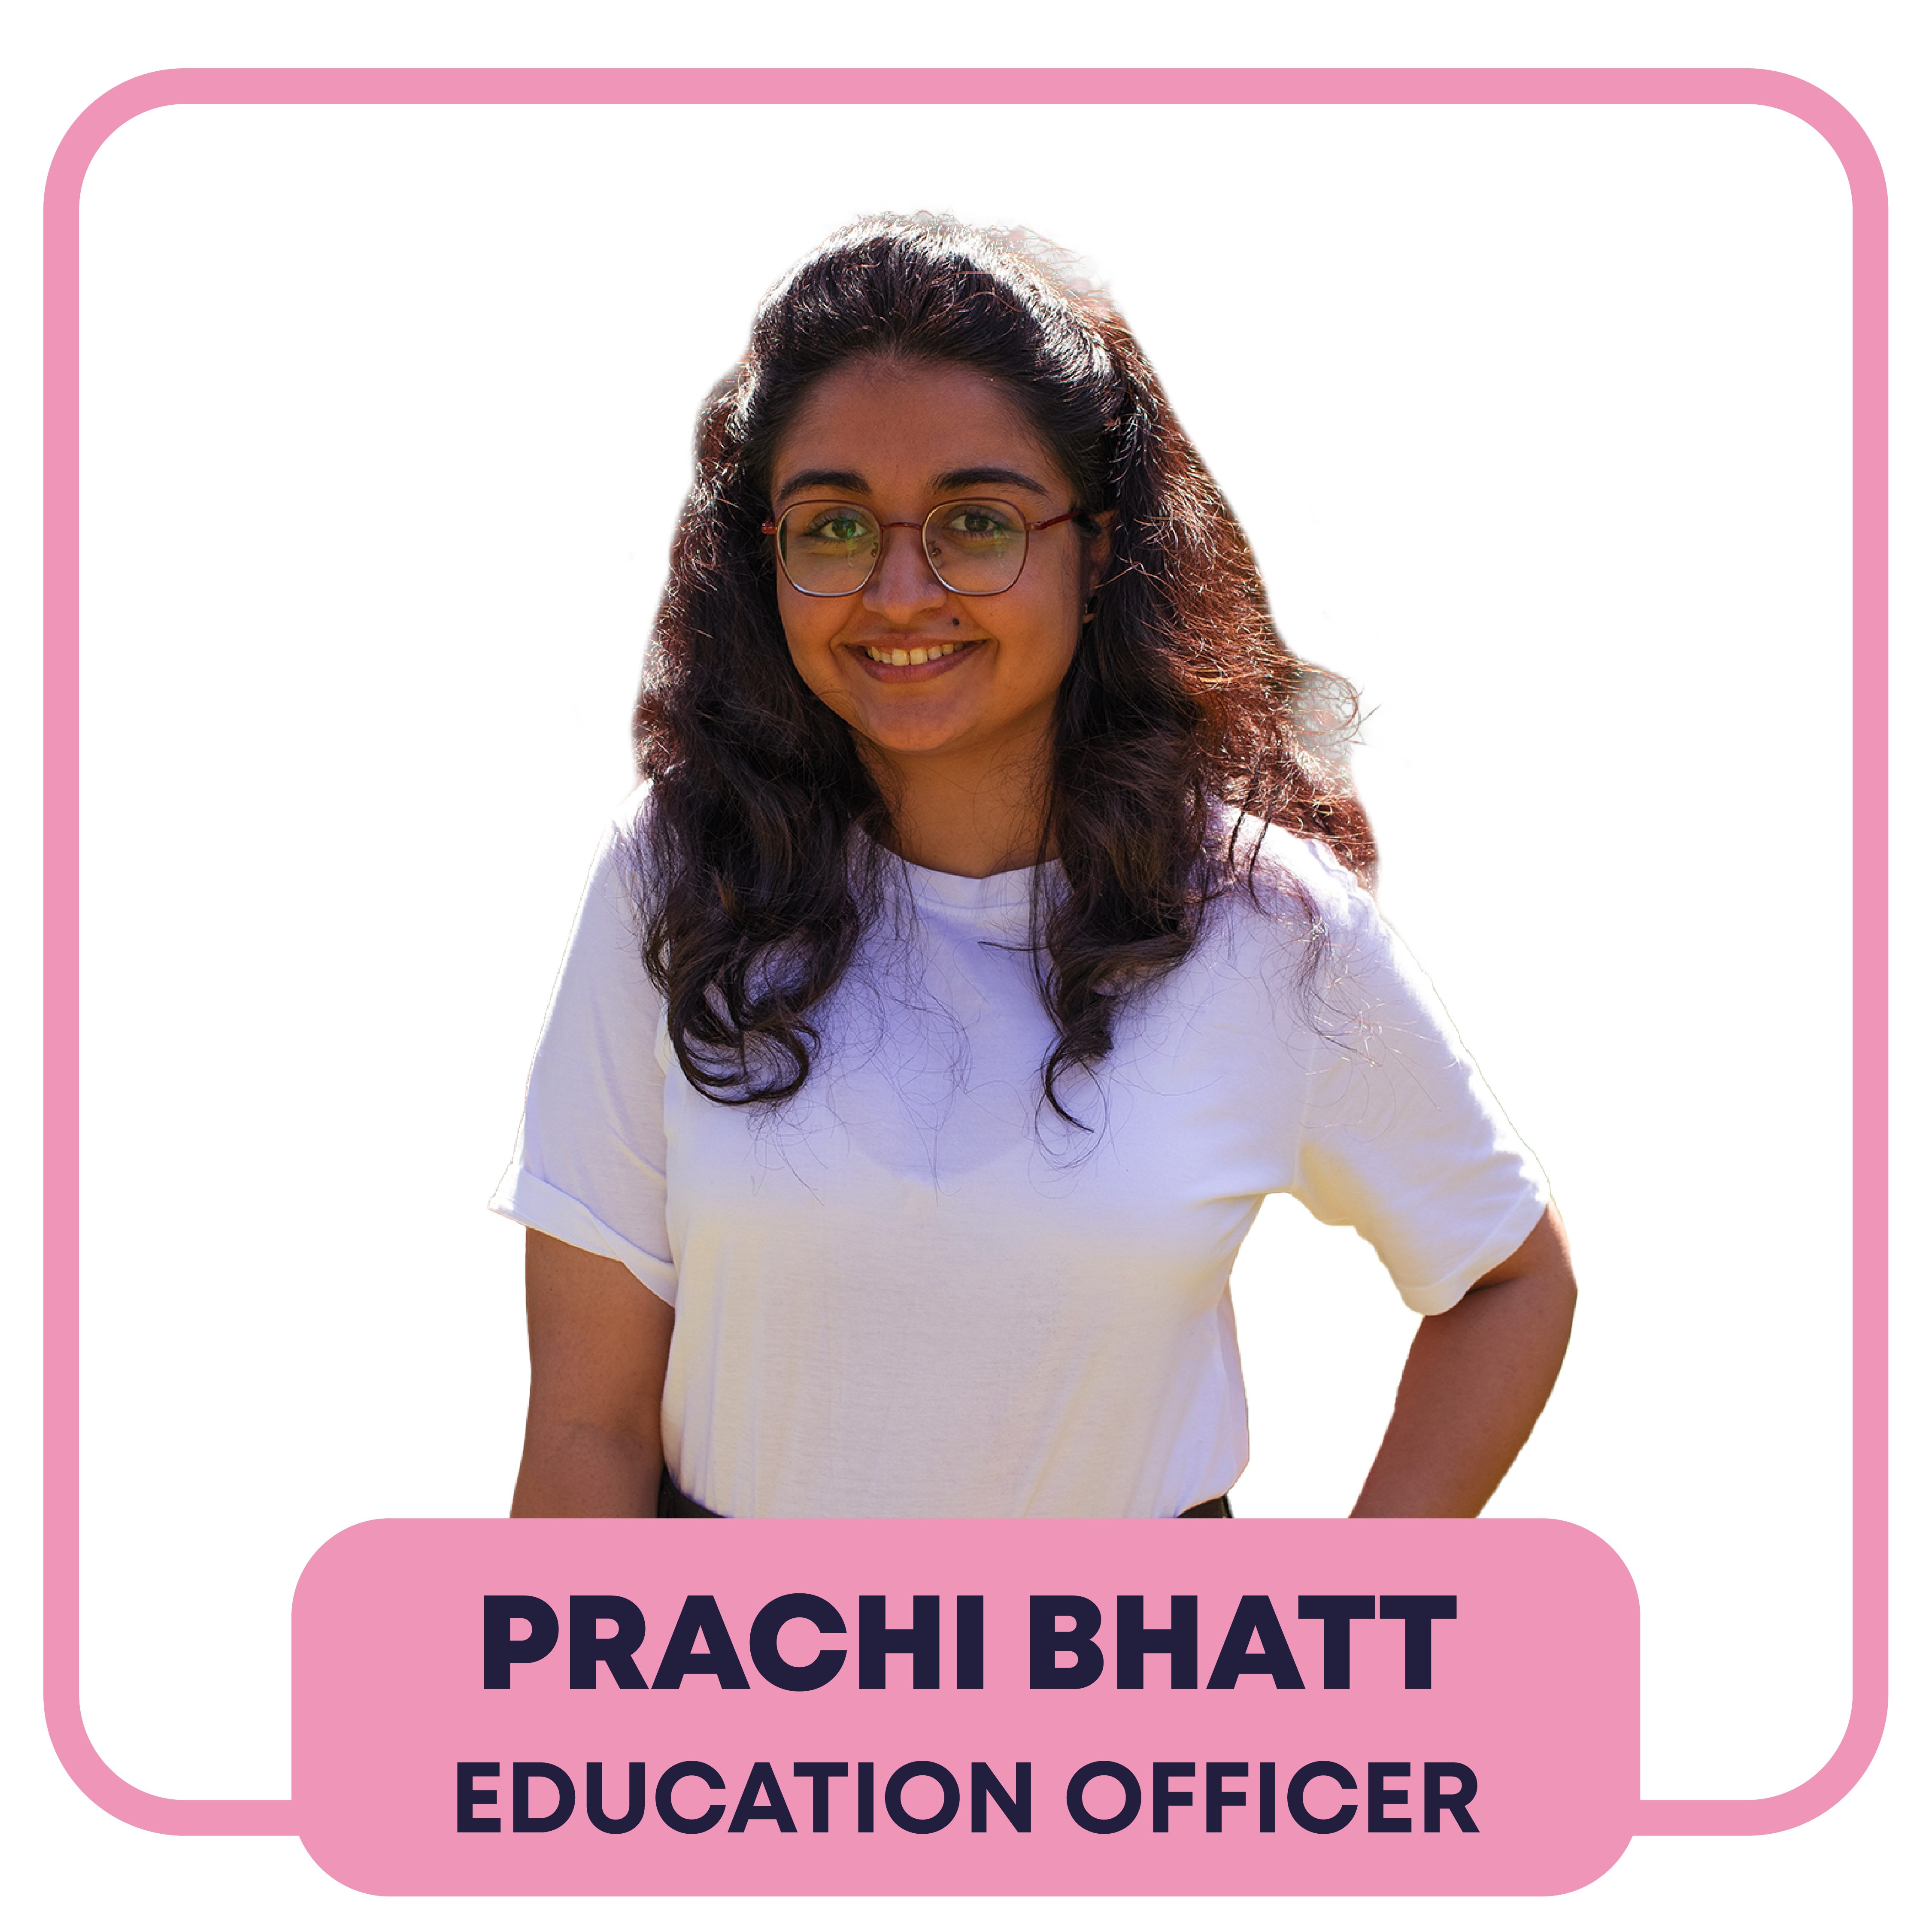 prachi bhatt - Education Officer - Pronouns: She/Her